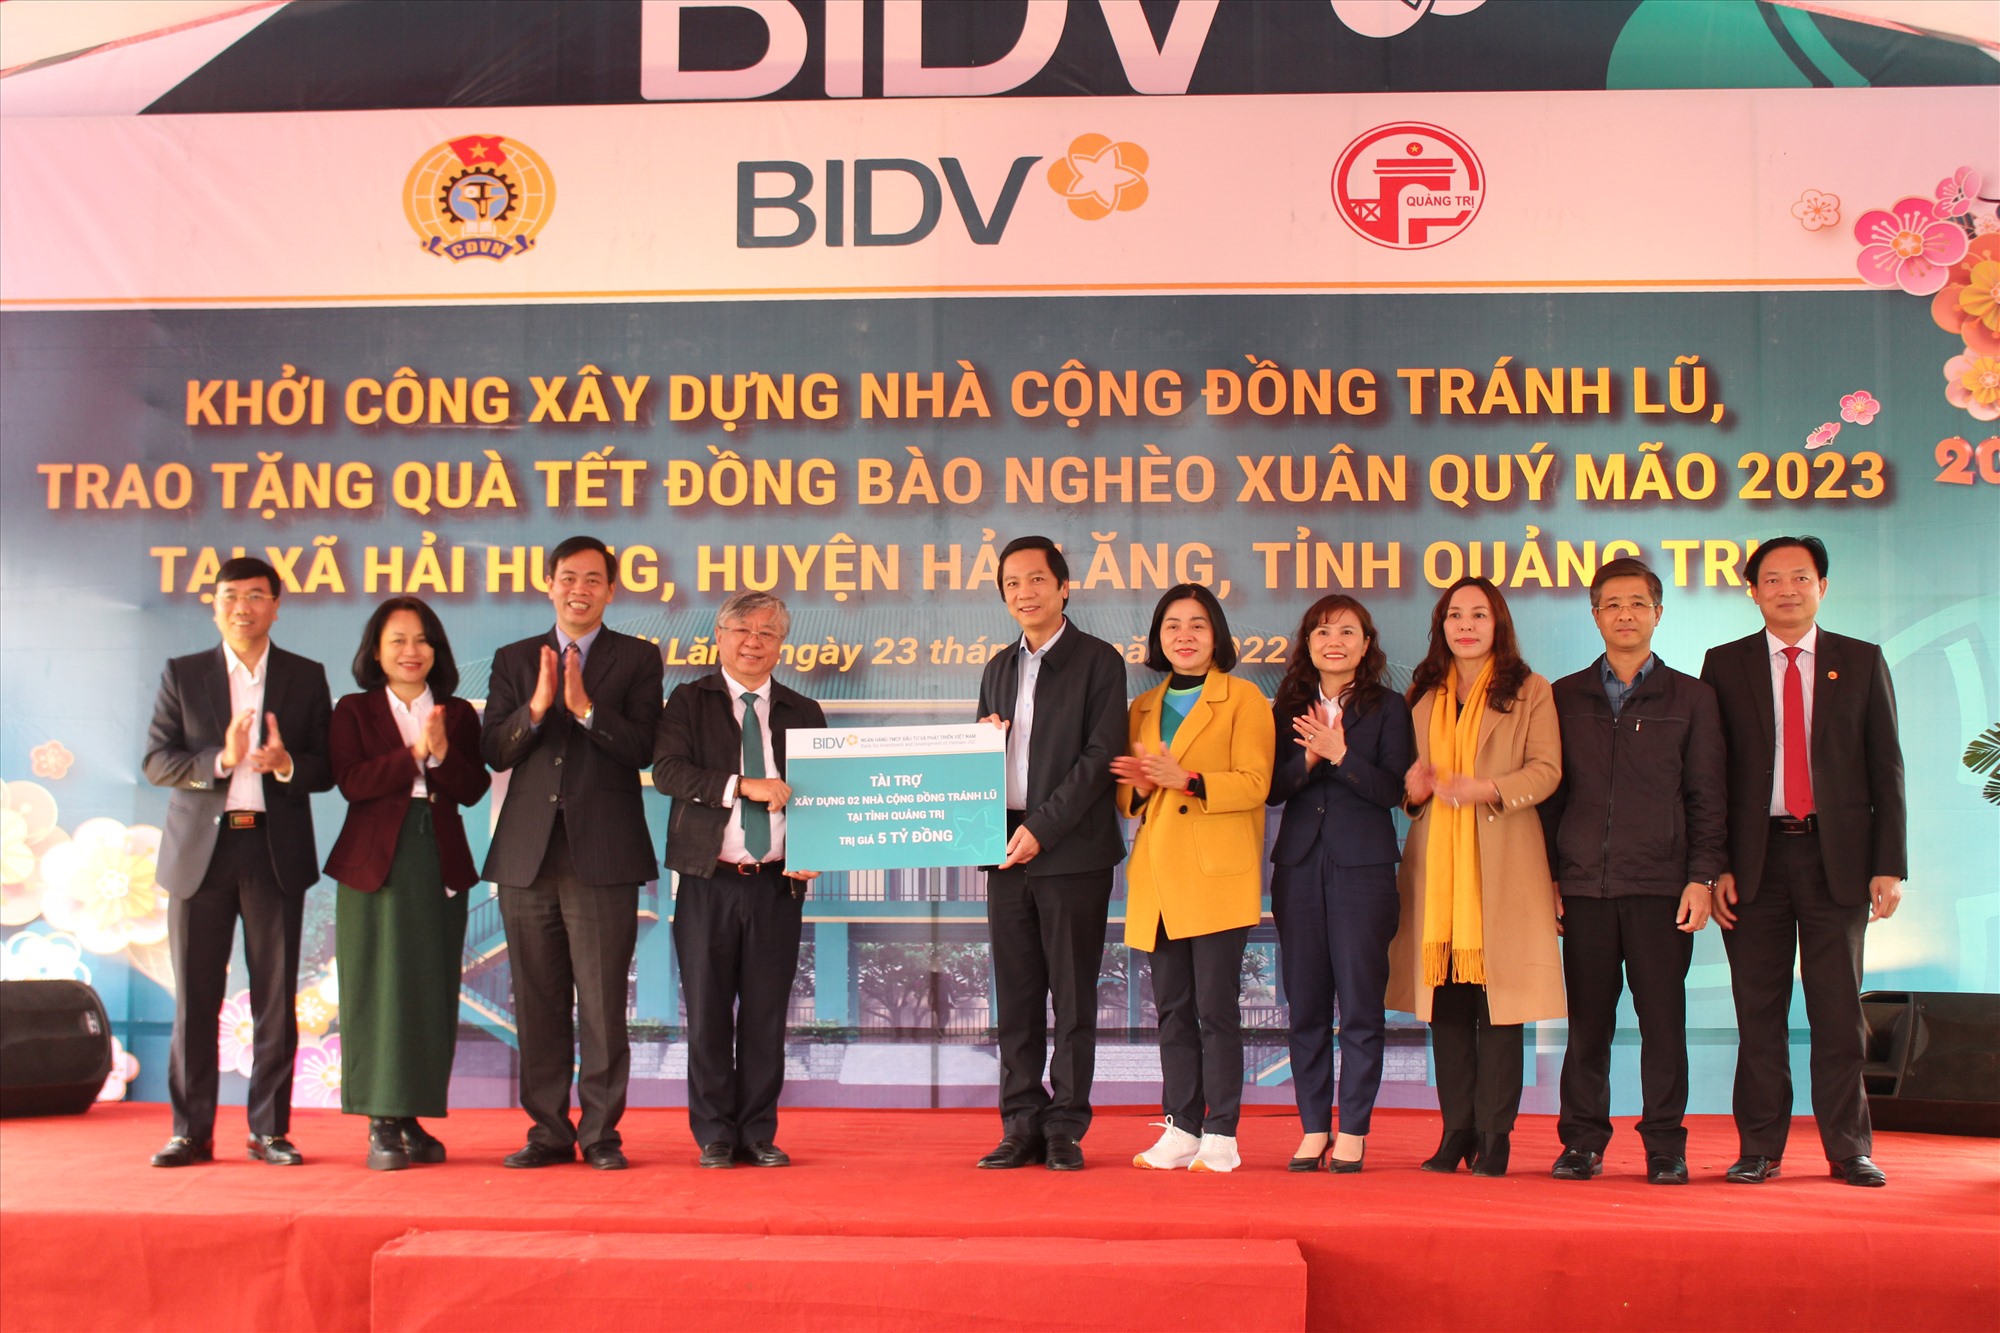 Đại diện BIDV trao biển tượng trưng hỗ trợ 5 tỉ đồng cho tỉnh Quảng Trị xây dựng các công trình nhà văn hóa cộng đồng kết hợp tránh lũ - Ảnh: T.T